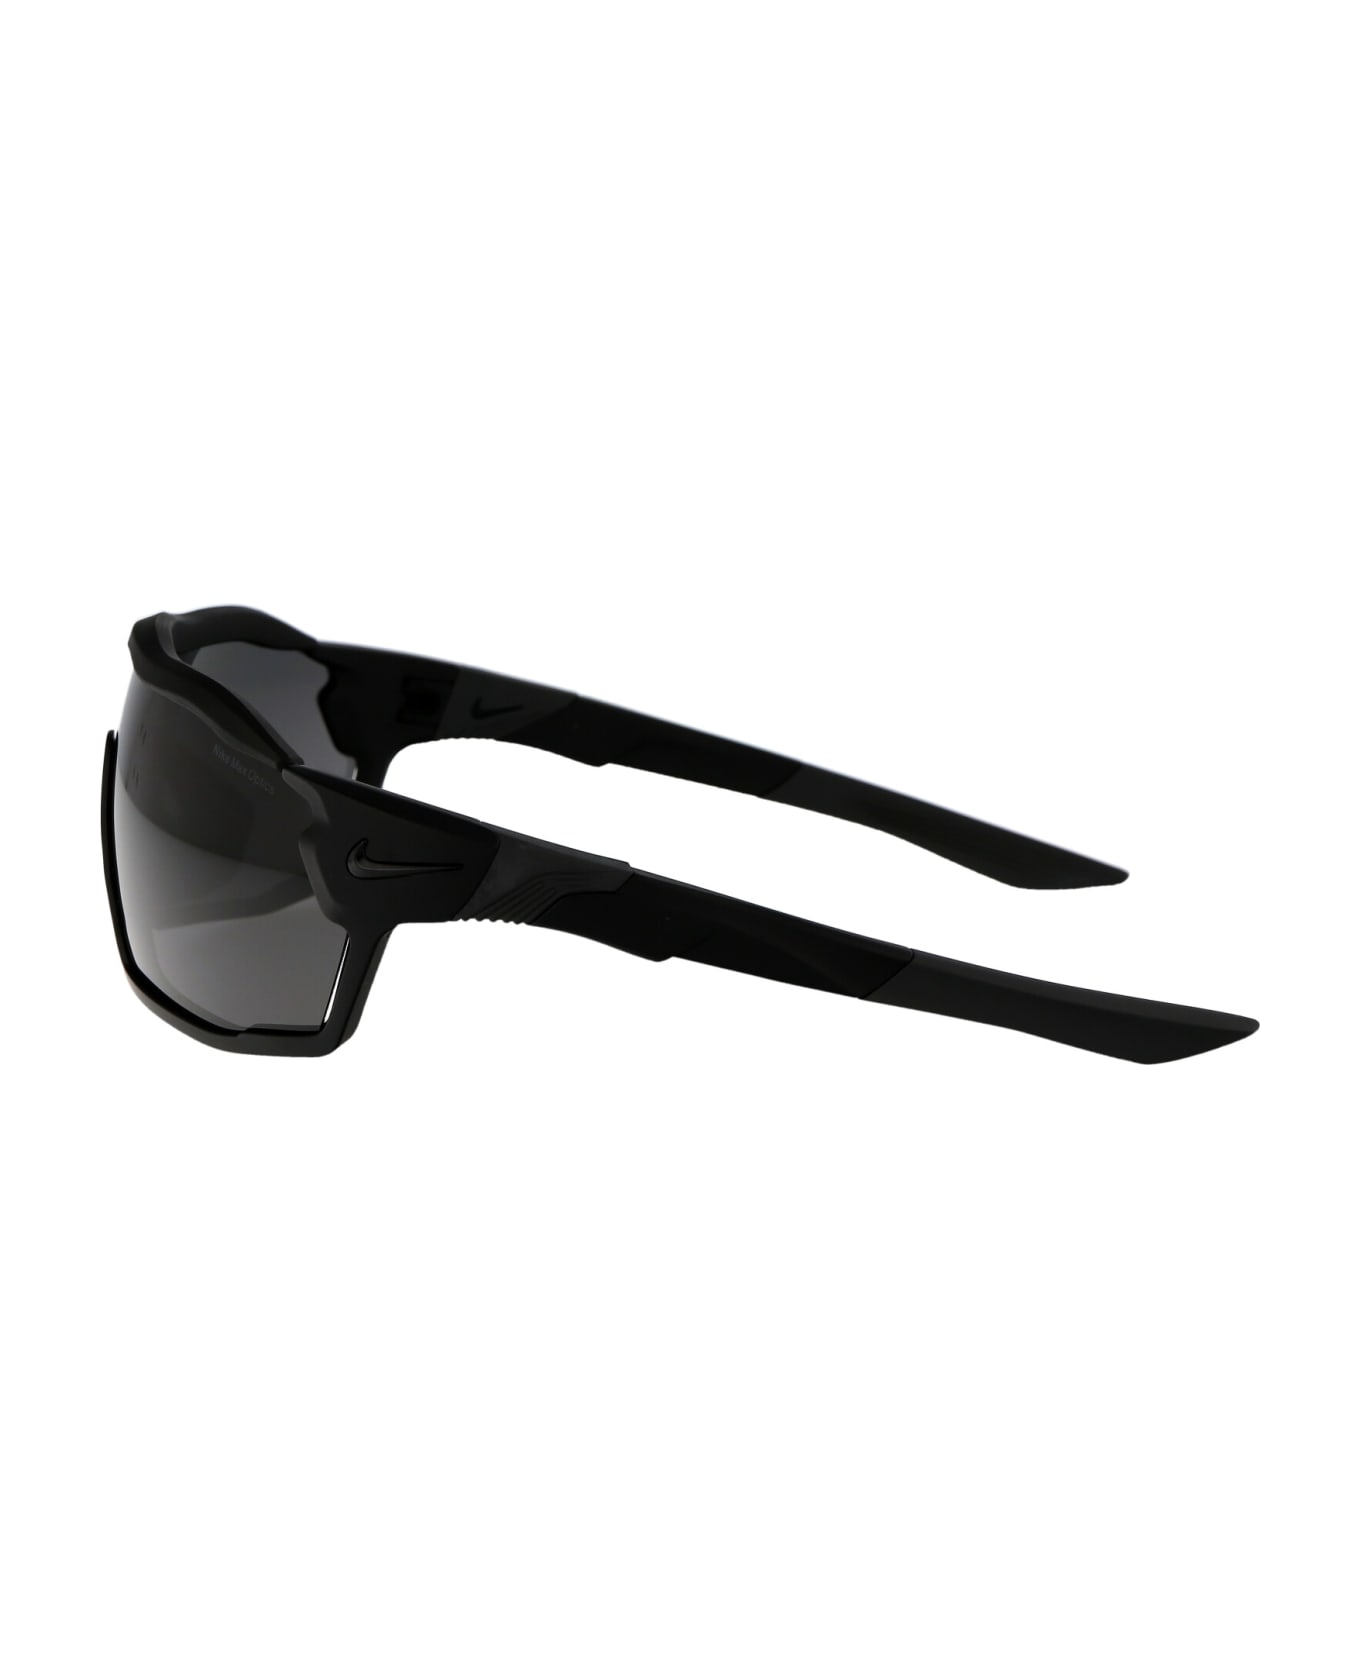 Nike Show X Rush Sunglasses - 010 DARK GREY MATTE BLACK